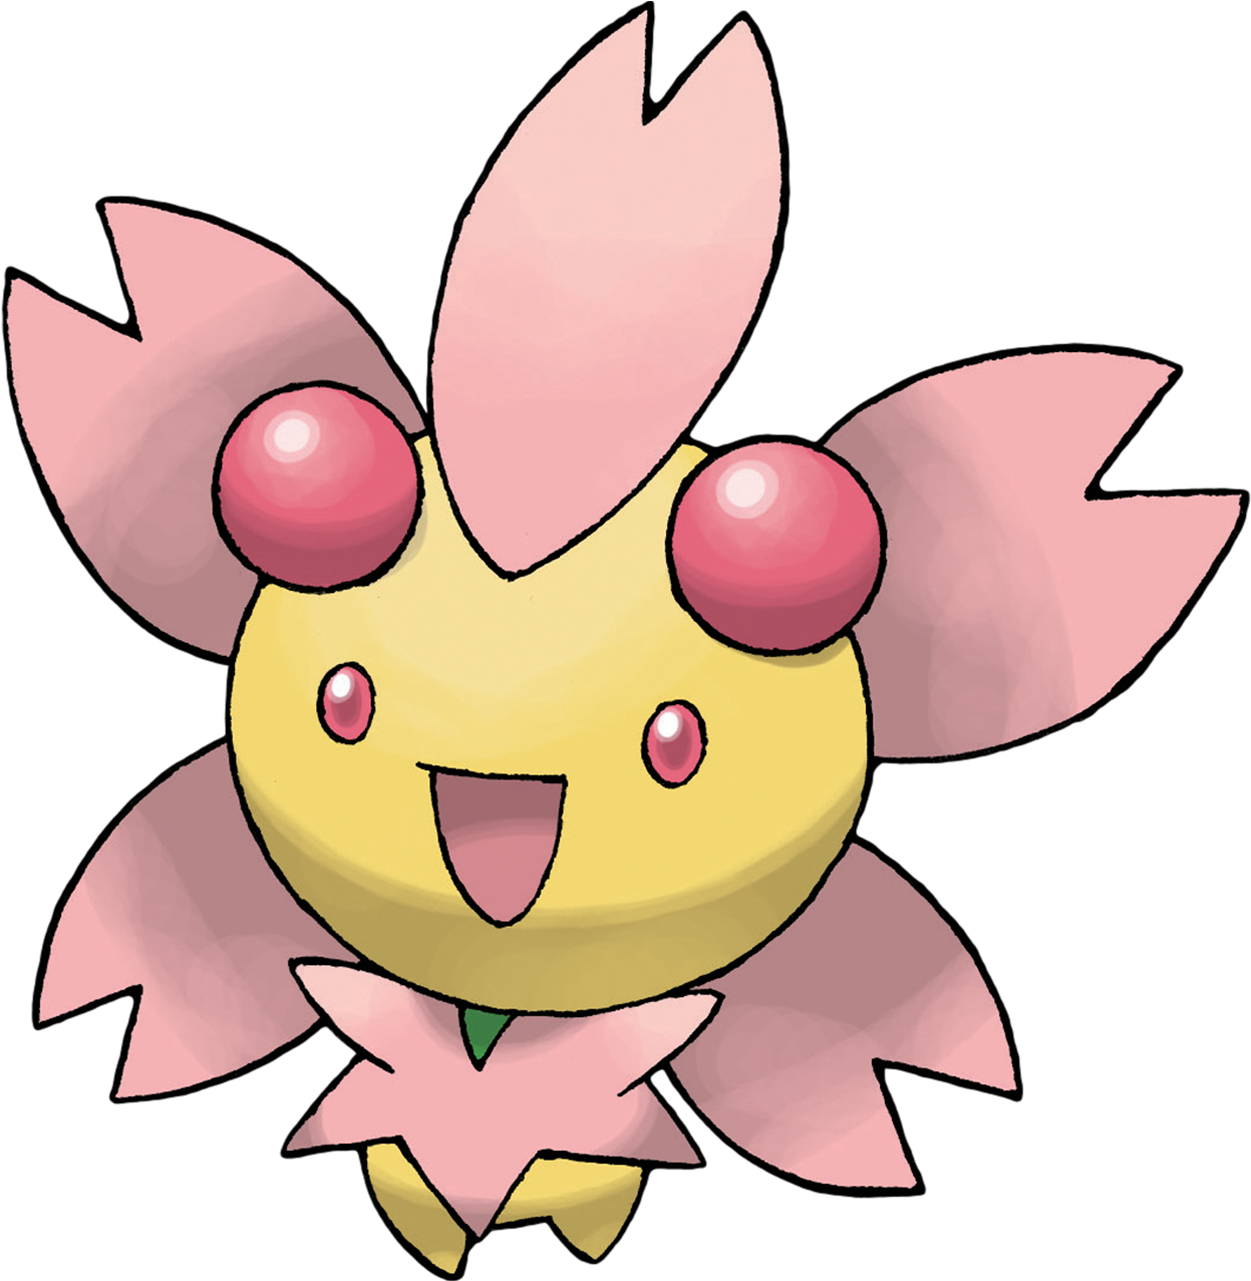 Sunshine Cherrim - Cherrim Pokemon (1463x1350)